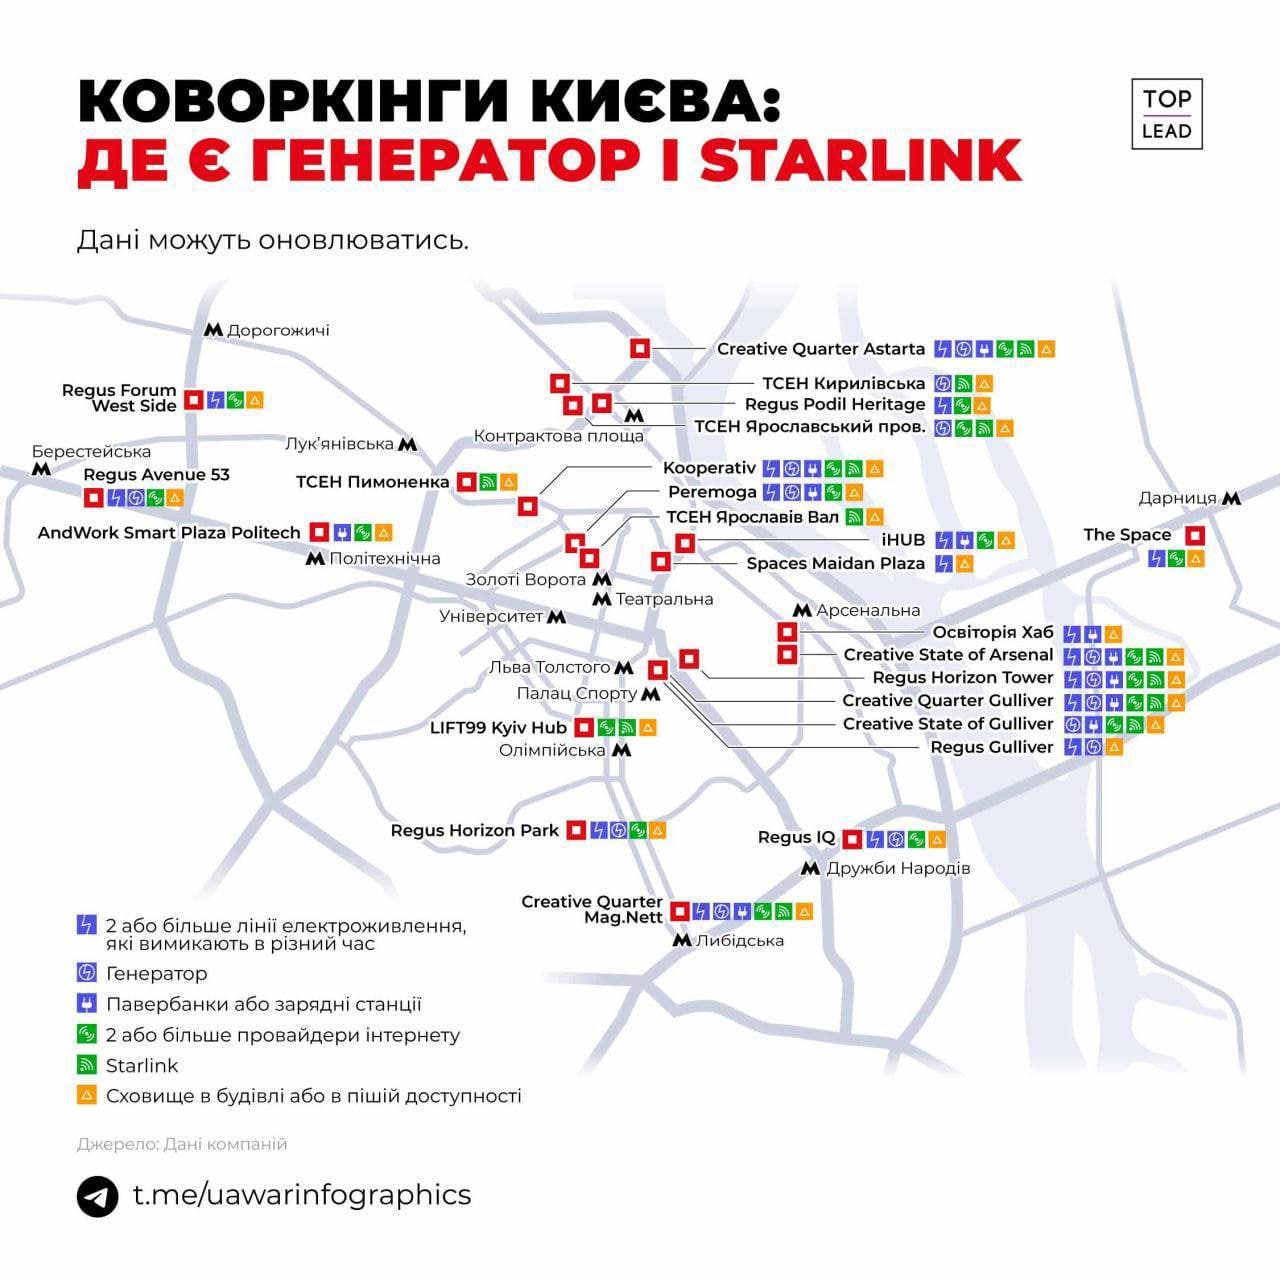 Карта коворкингов Киева, где есть